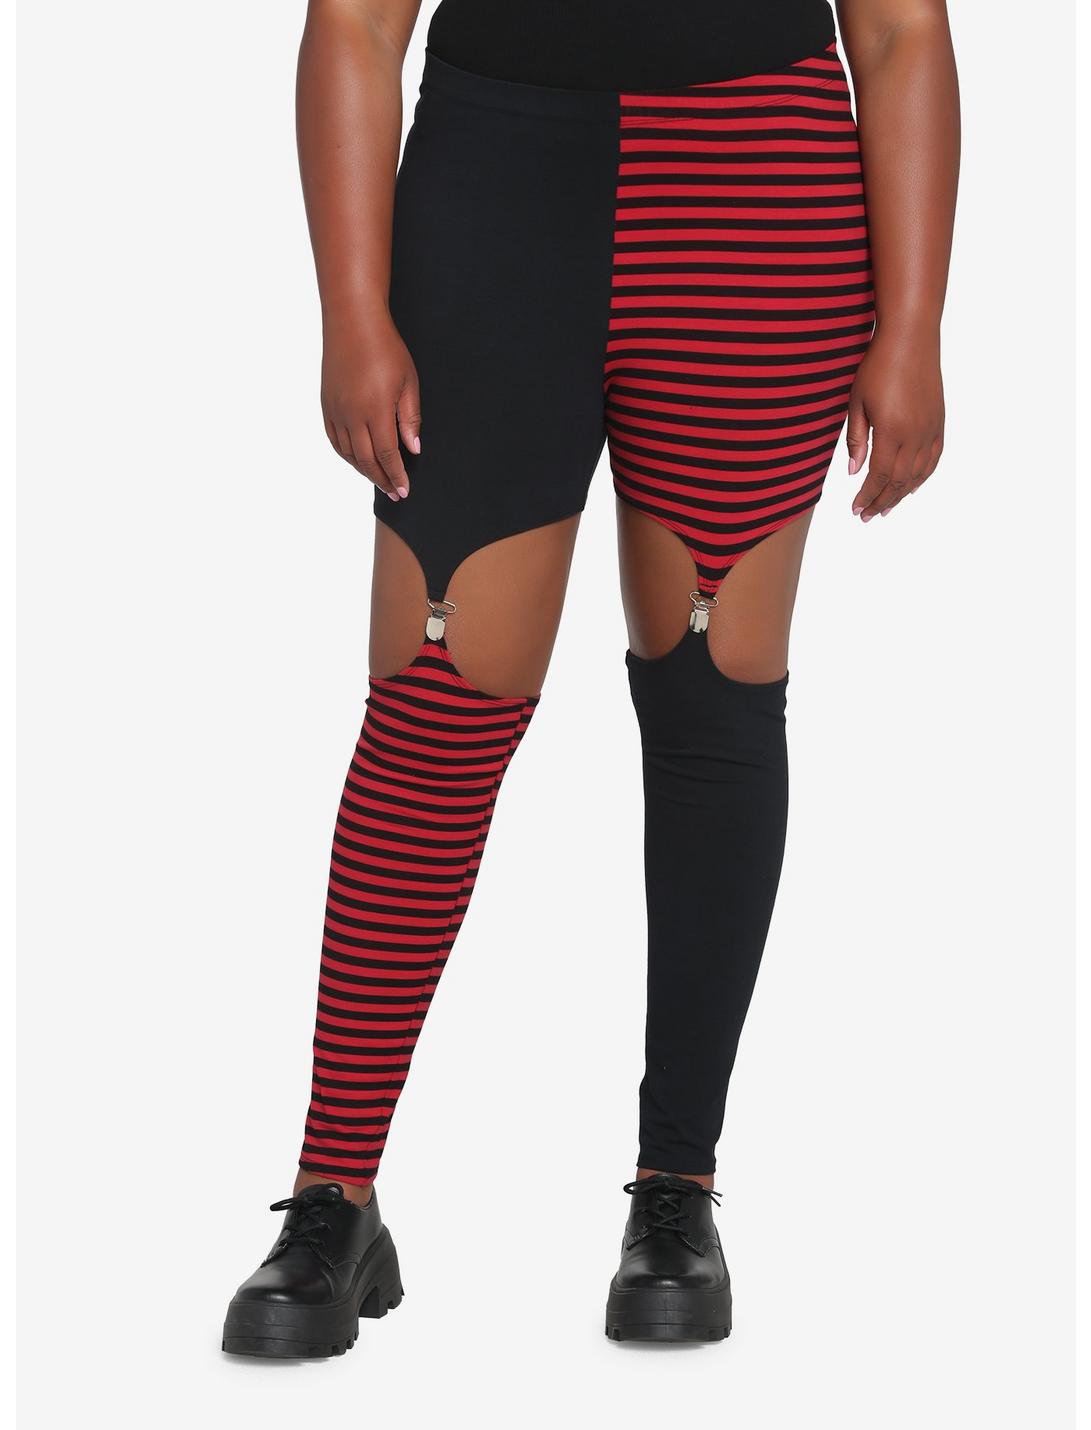 Black & Red Split Garter Leggings Plus Size, BLACK  WHITE, hi-res